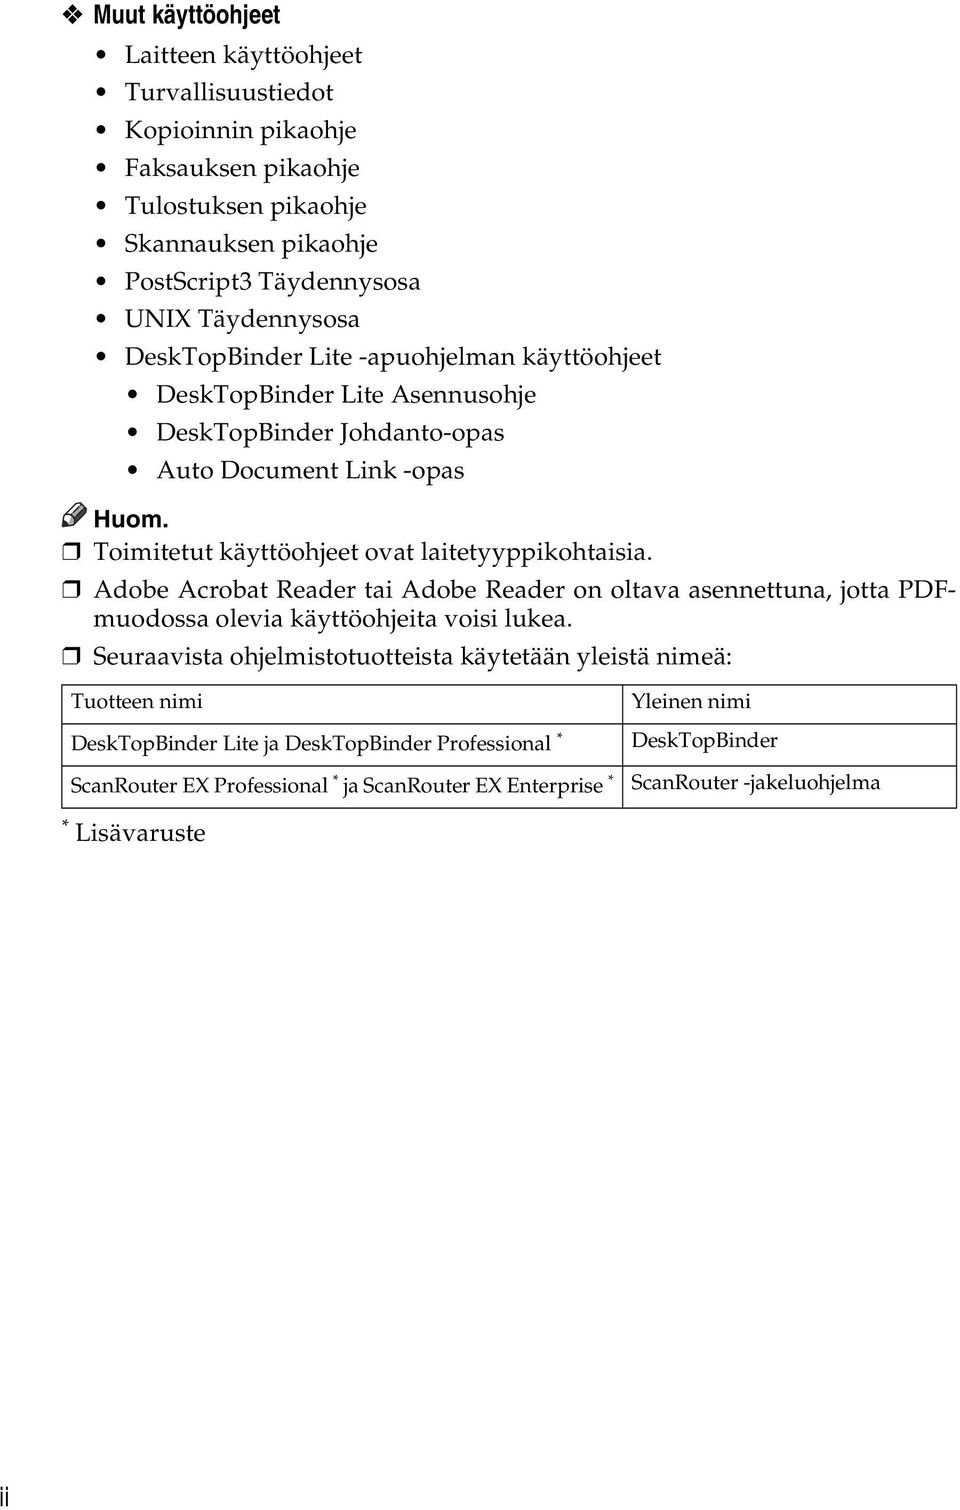 Toimitetut käyttöohjeet ovat laitetyyppikohtaisia. Adobe Acrobat Reader tai Adobe Reader on oltava asennettuna, jotta PDFmuodossa olevia käyttöohjeita voisi lukea.